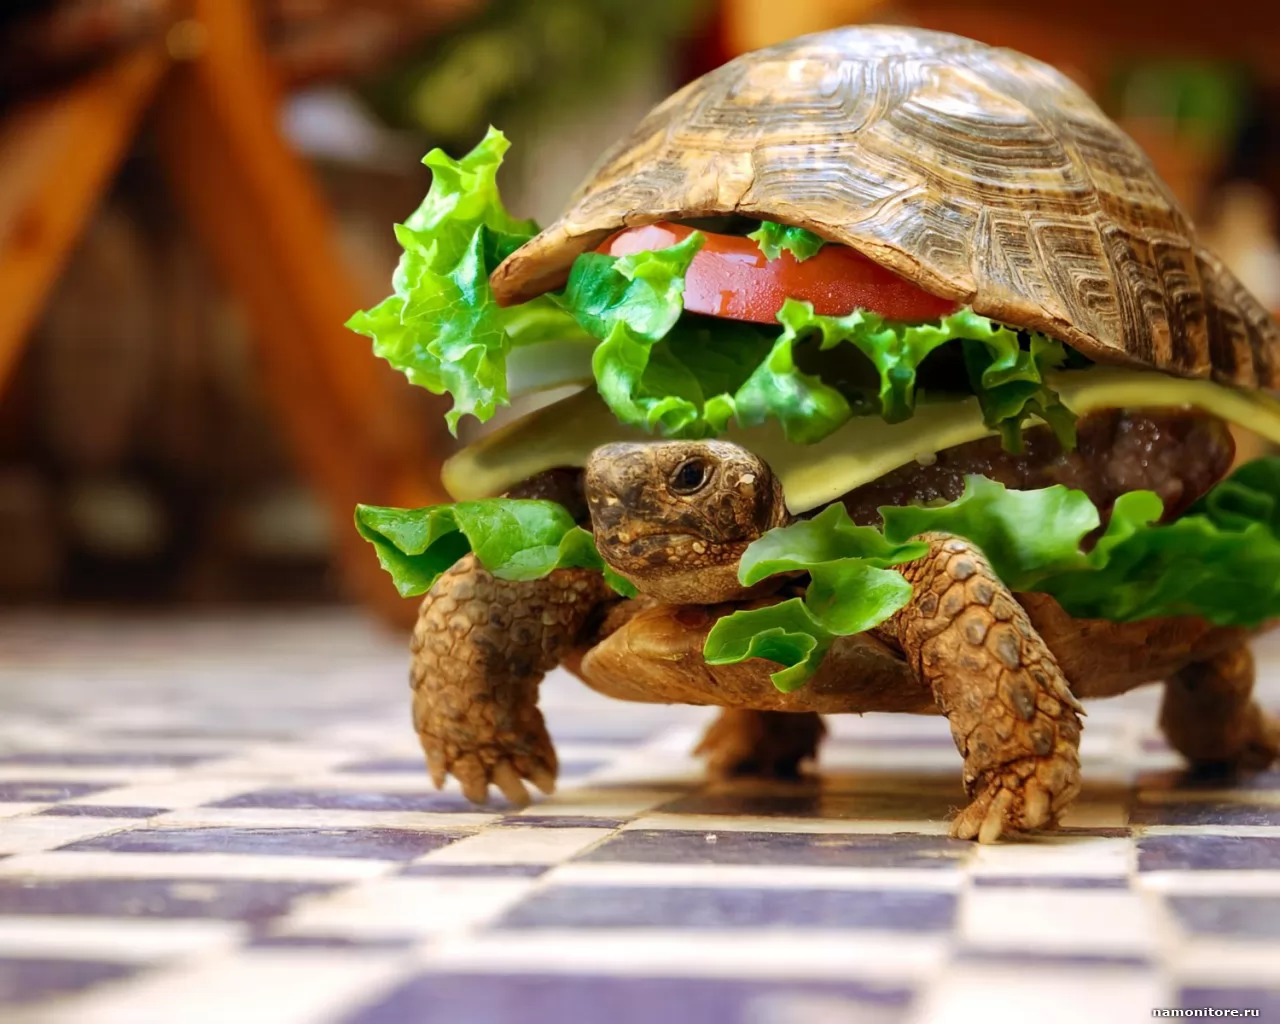 Cherepahaburger, best, humour, turtles x